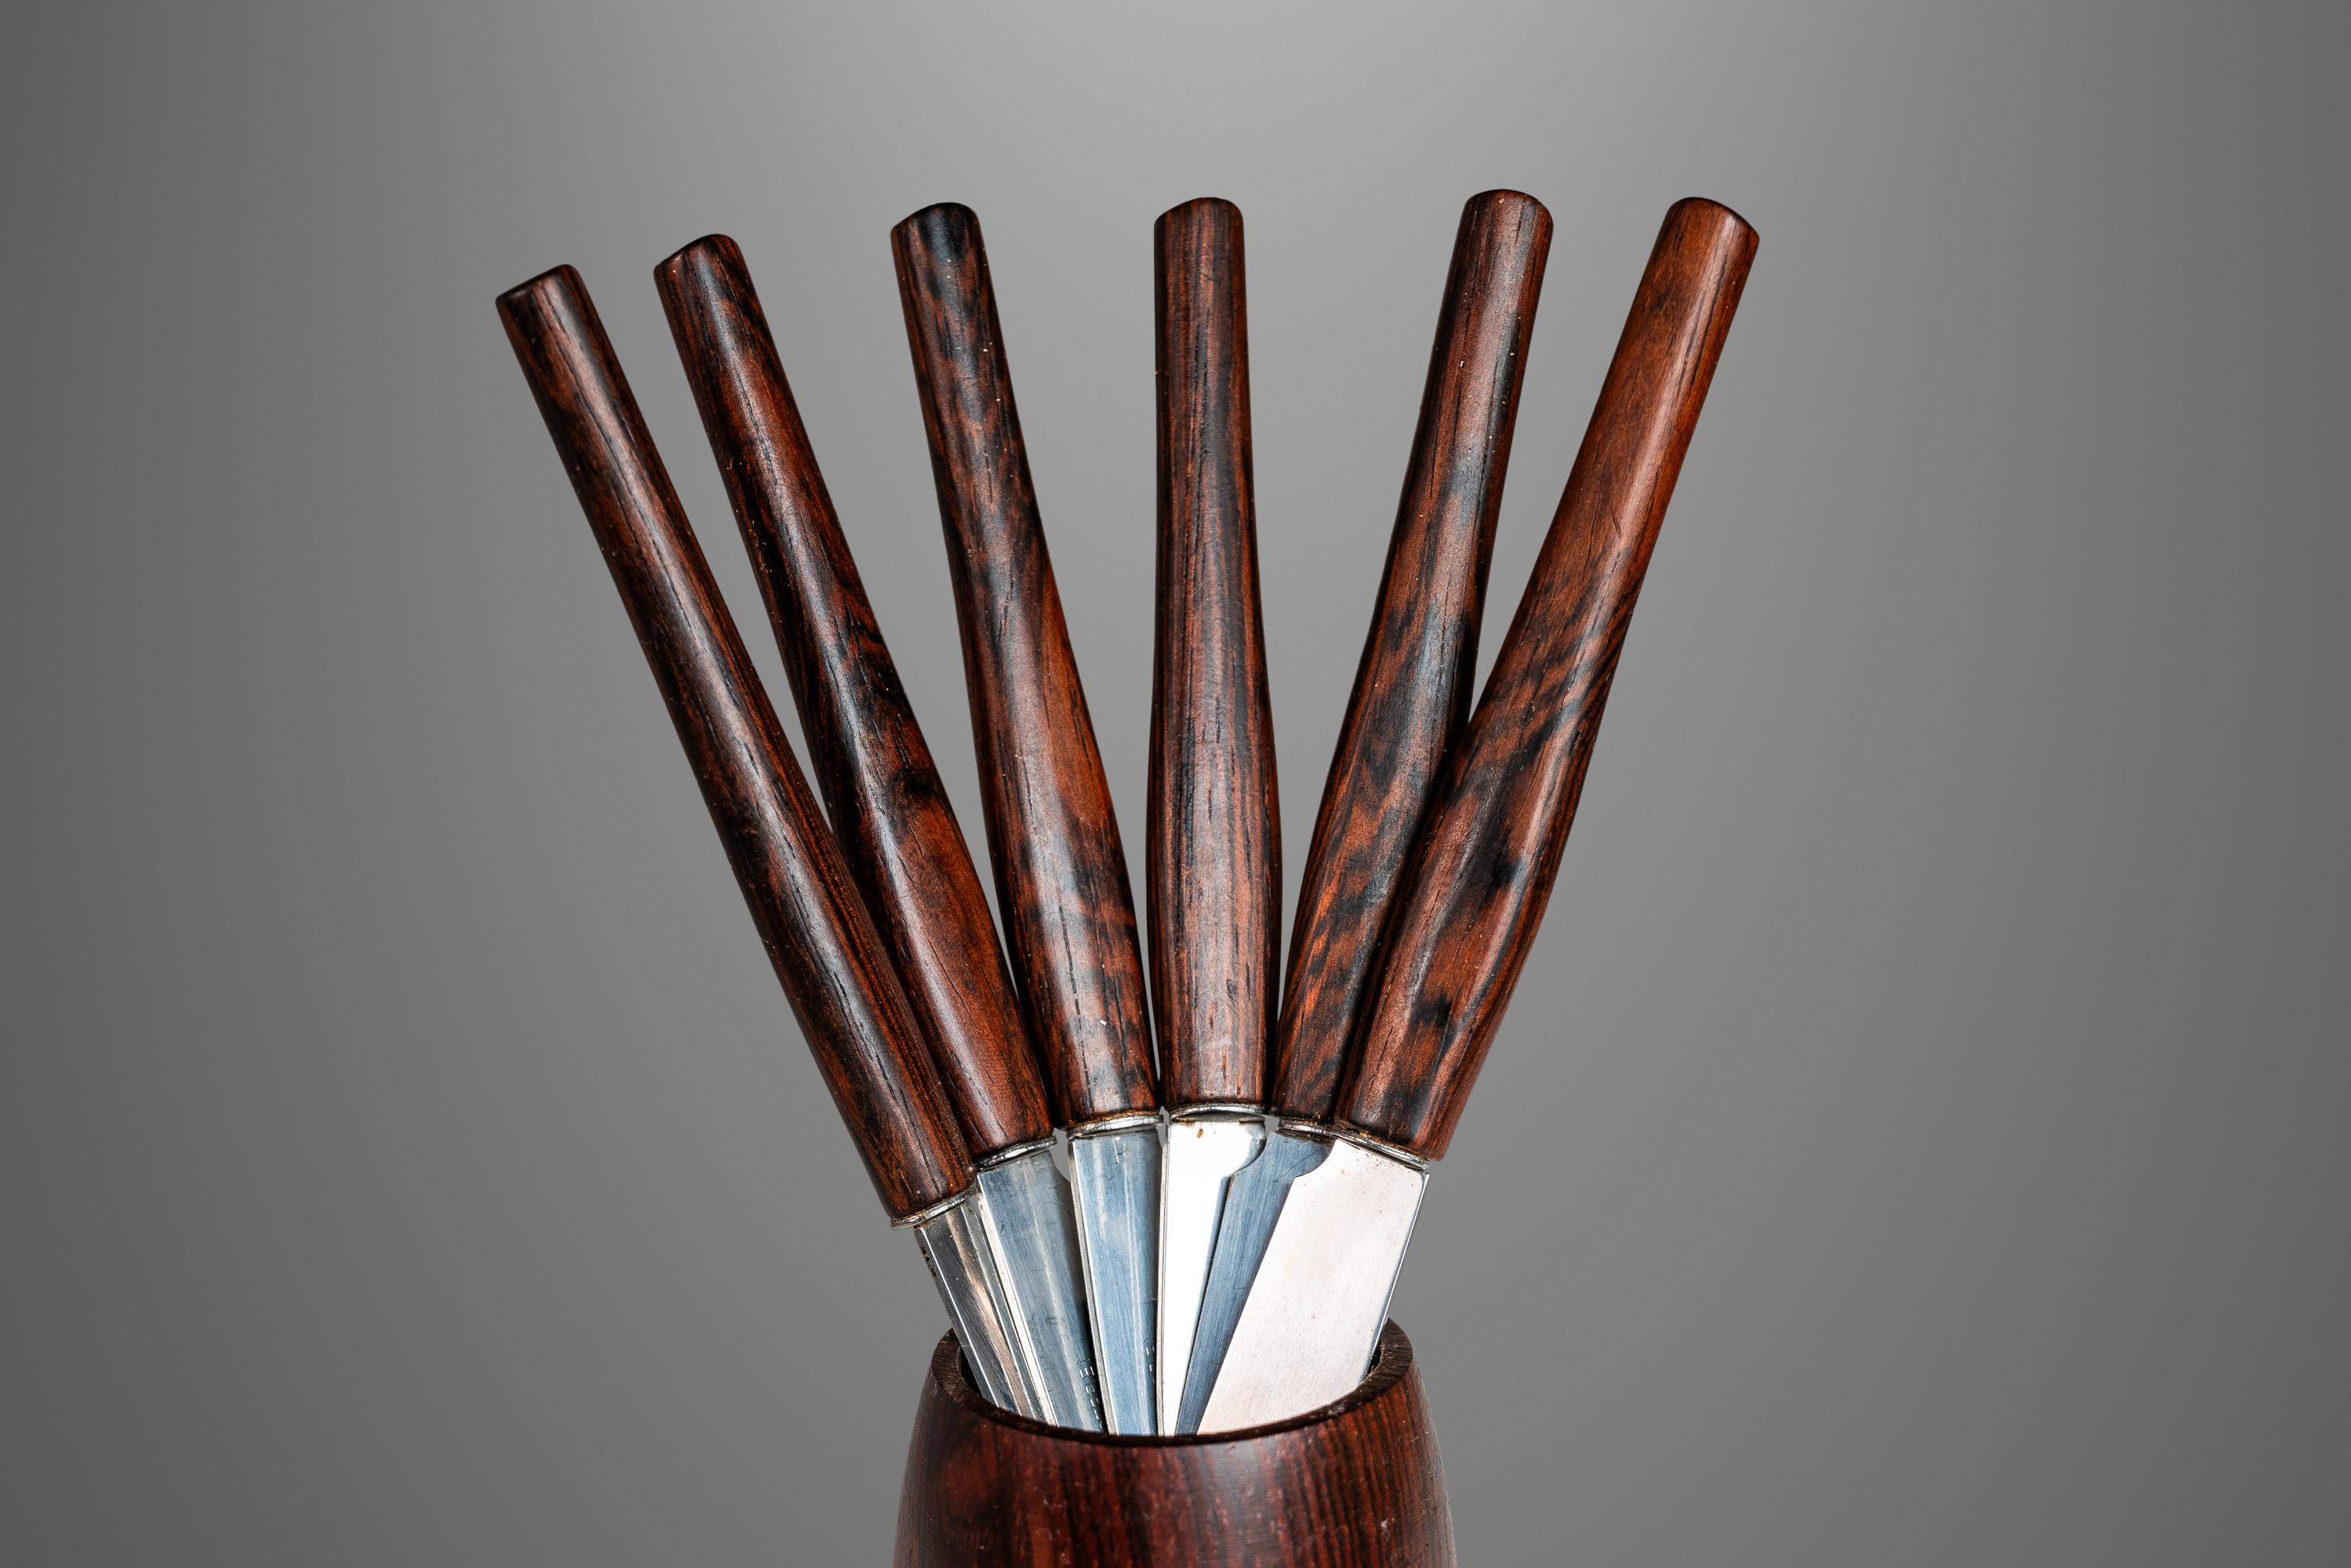 Rostfrei Solingen: Set of 6 Danish Modern Serving Knives, Rosewood Holder, Germa For Sale 4